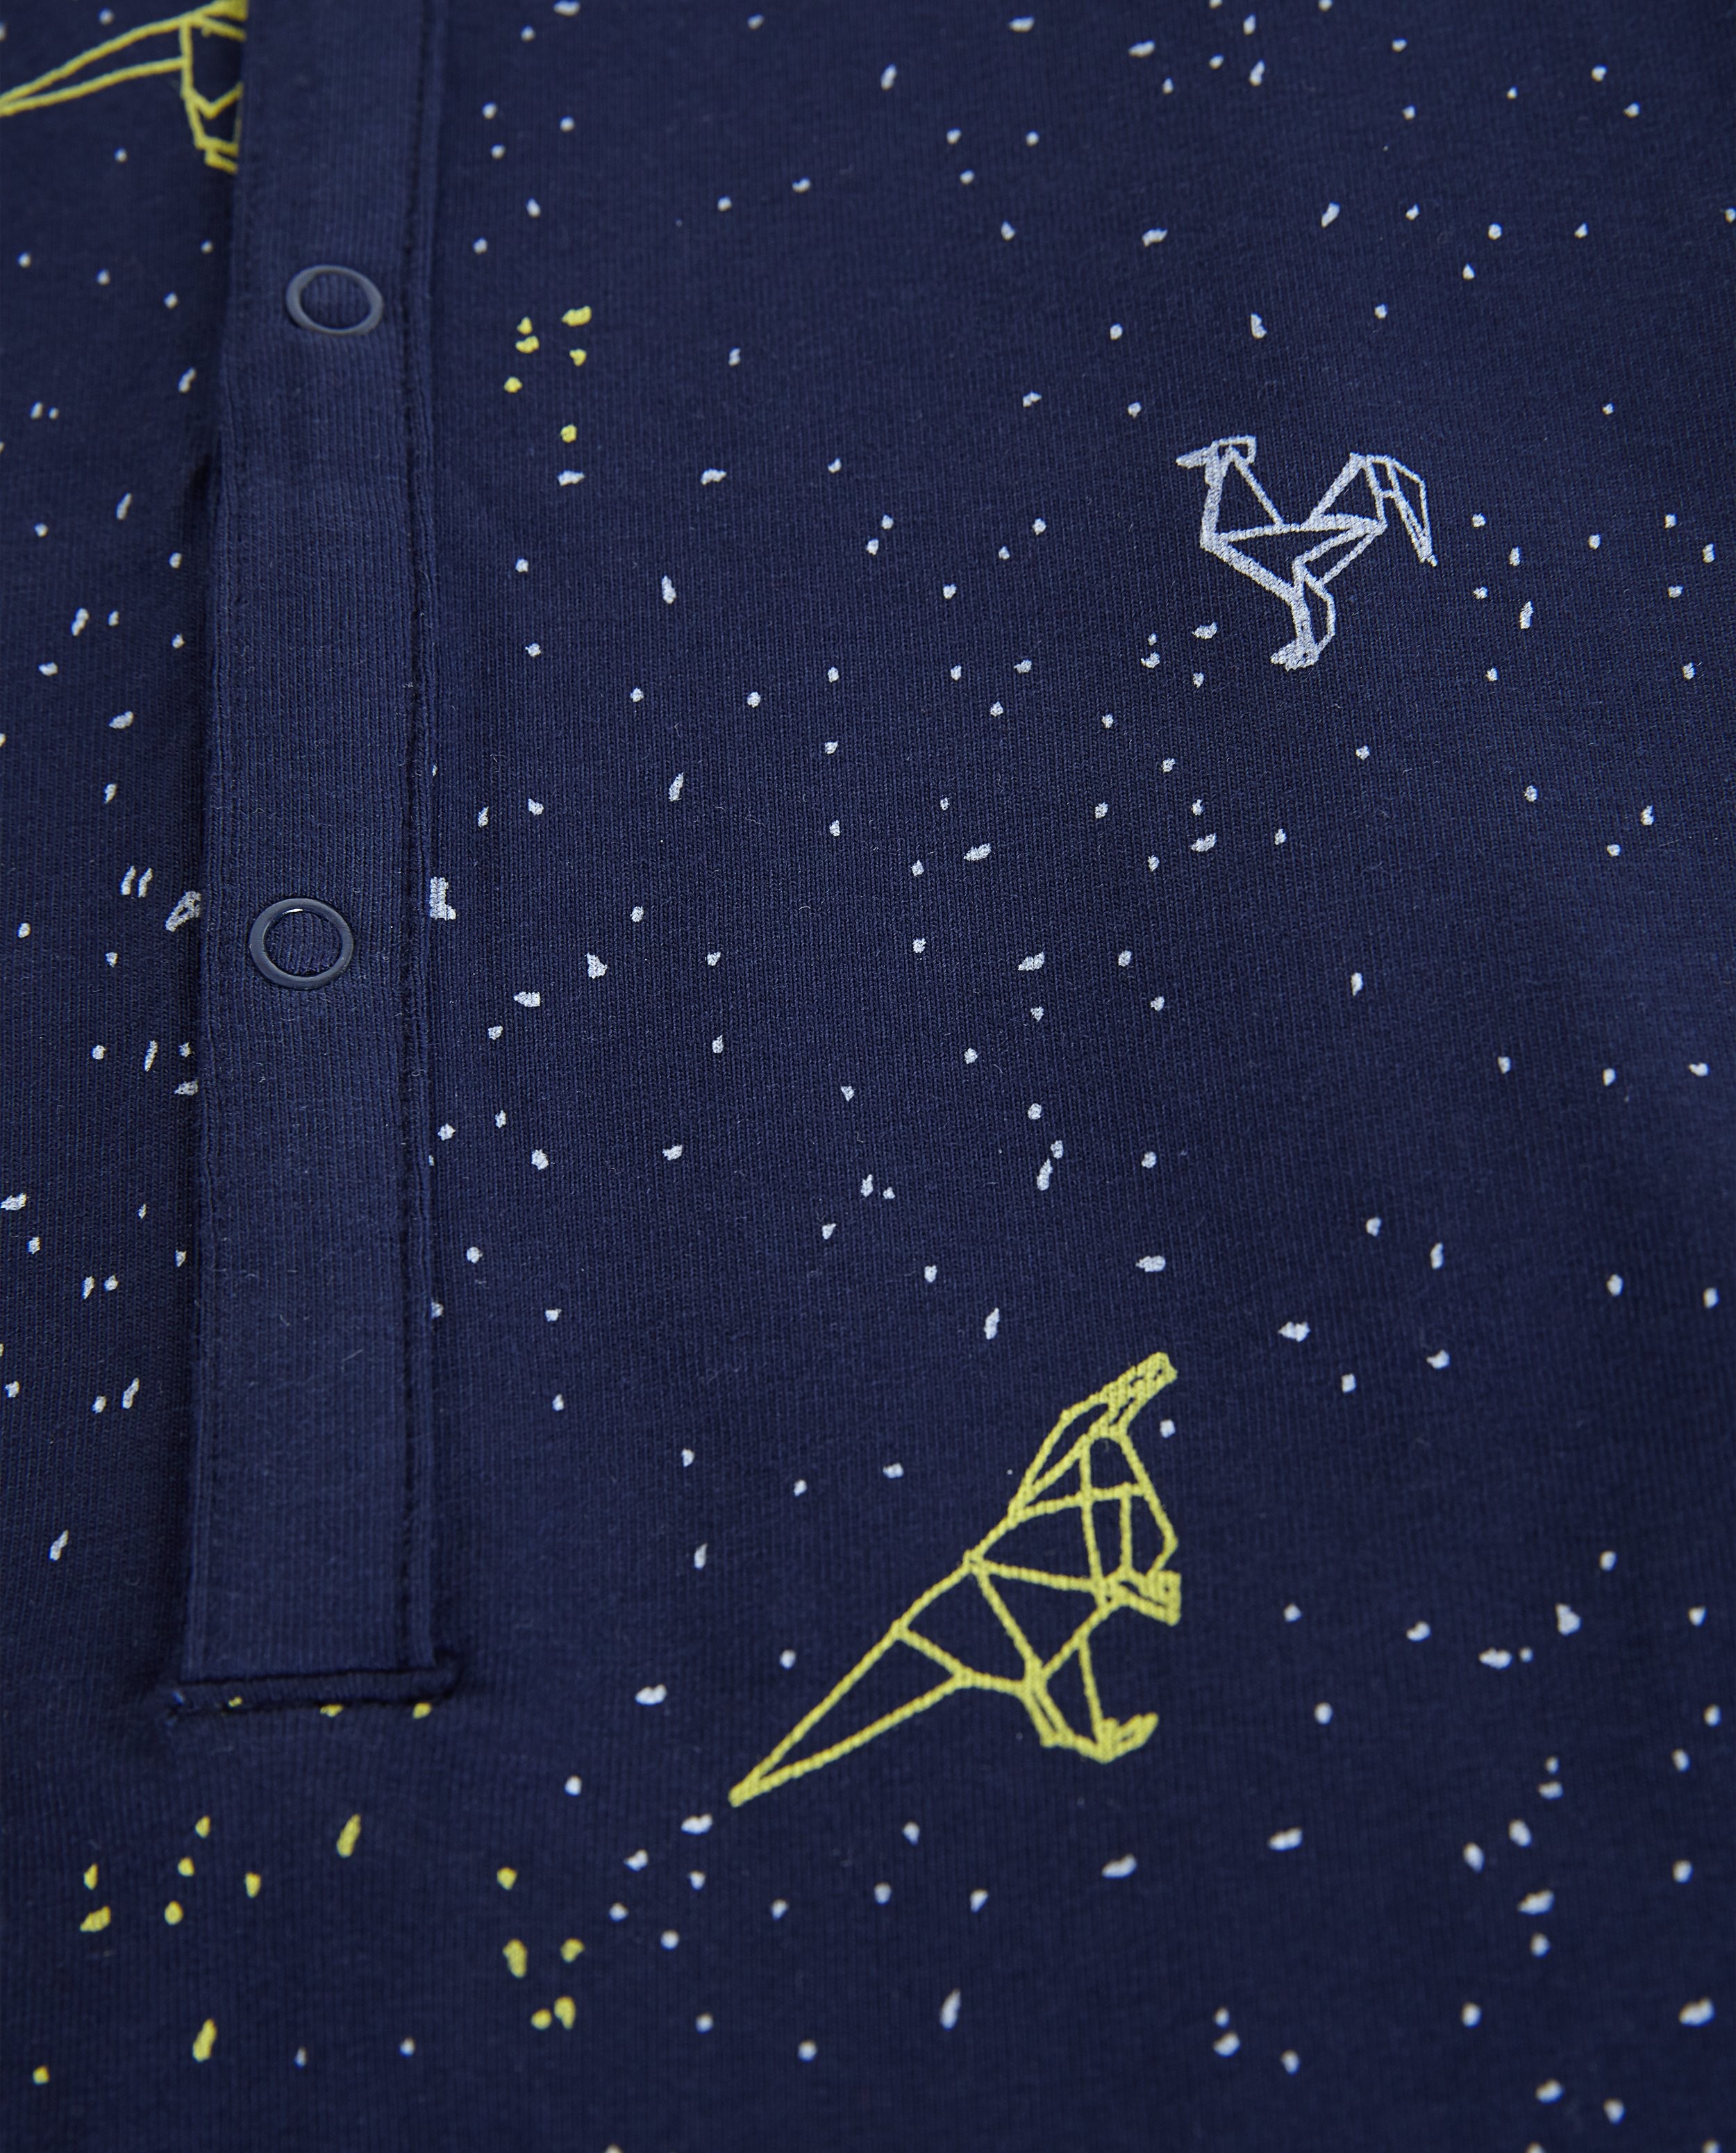 Nachtkleding - Pyjama met dinosaurusprint